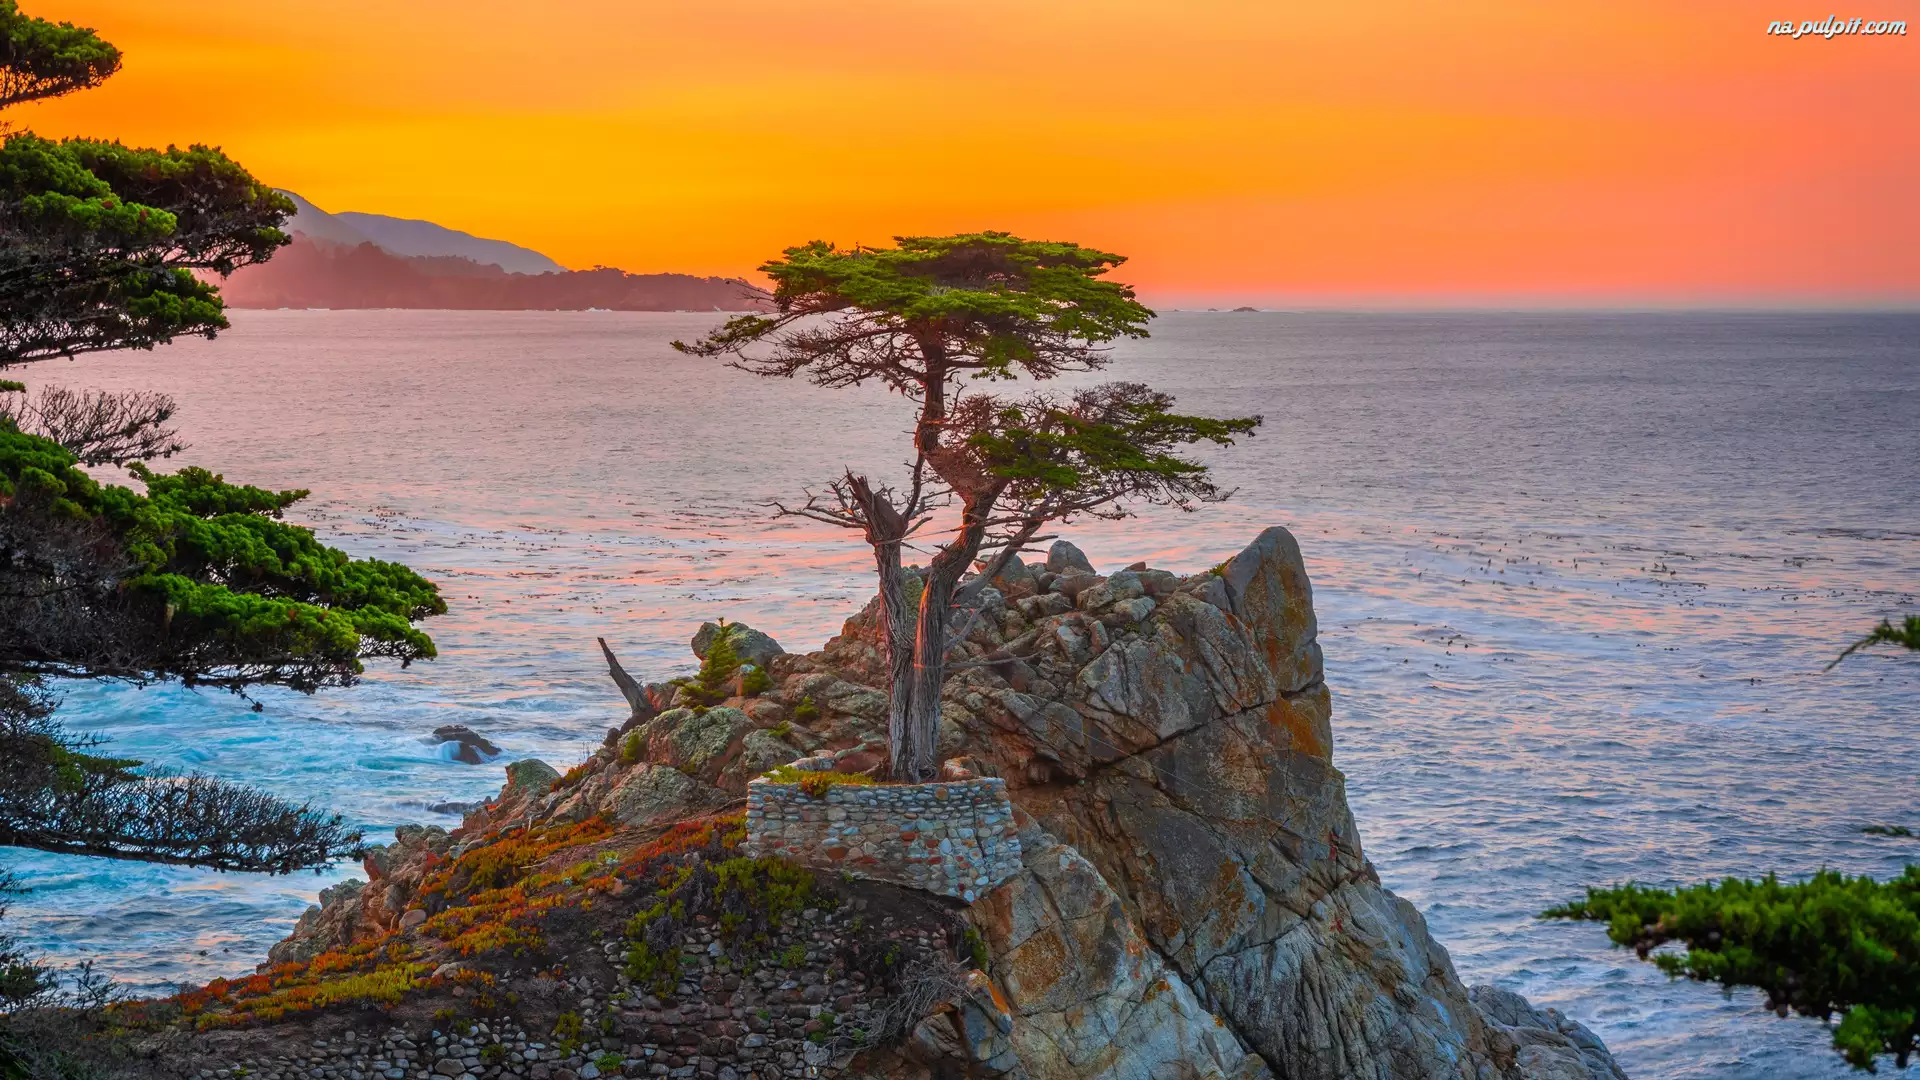 Stany Zjednoczone, Atrakcja Lone Cypress, Kalifornia, Zatoka Monterey, Morze, Skała, Morze, Cyprys wielkoszyszkowy, Pebble Beach